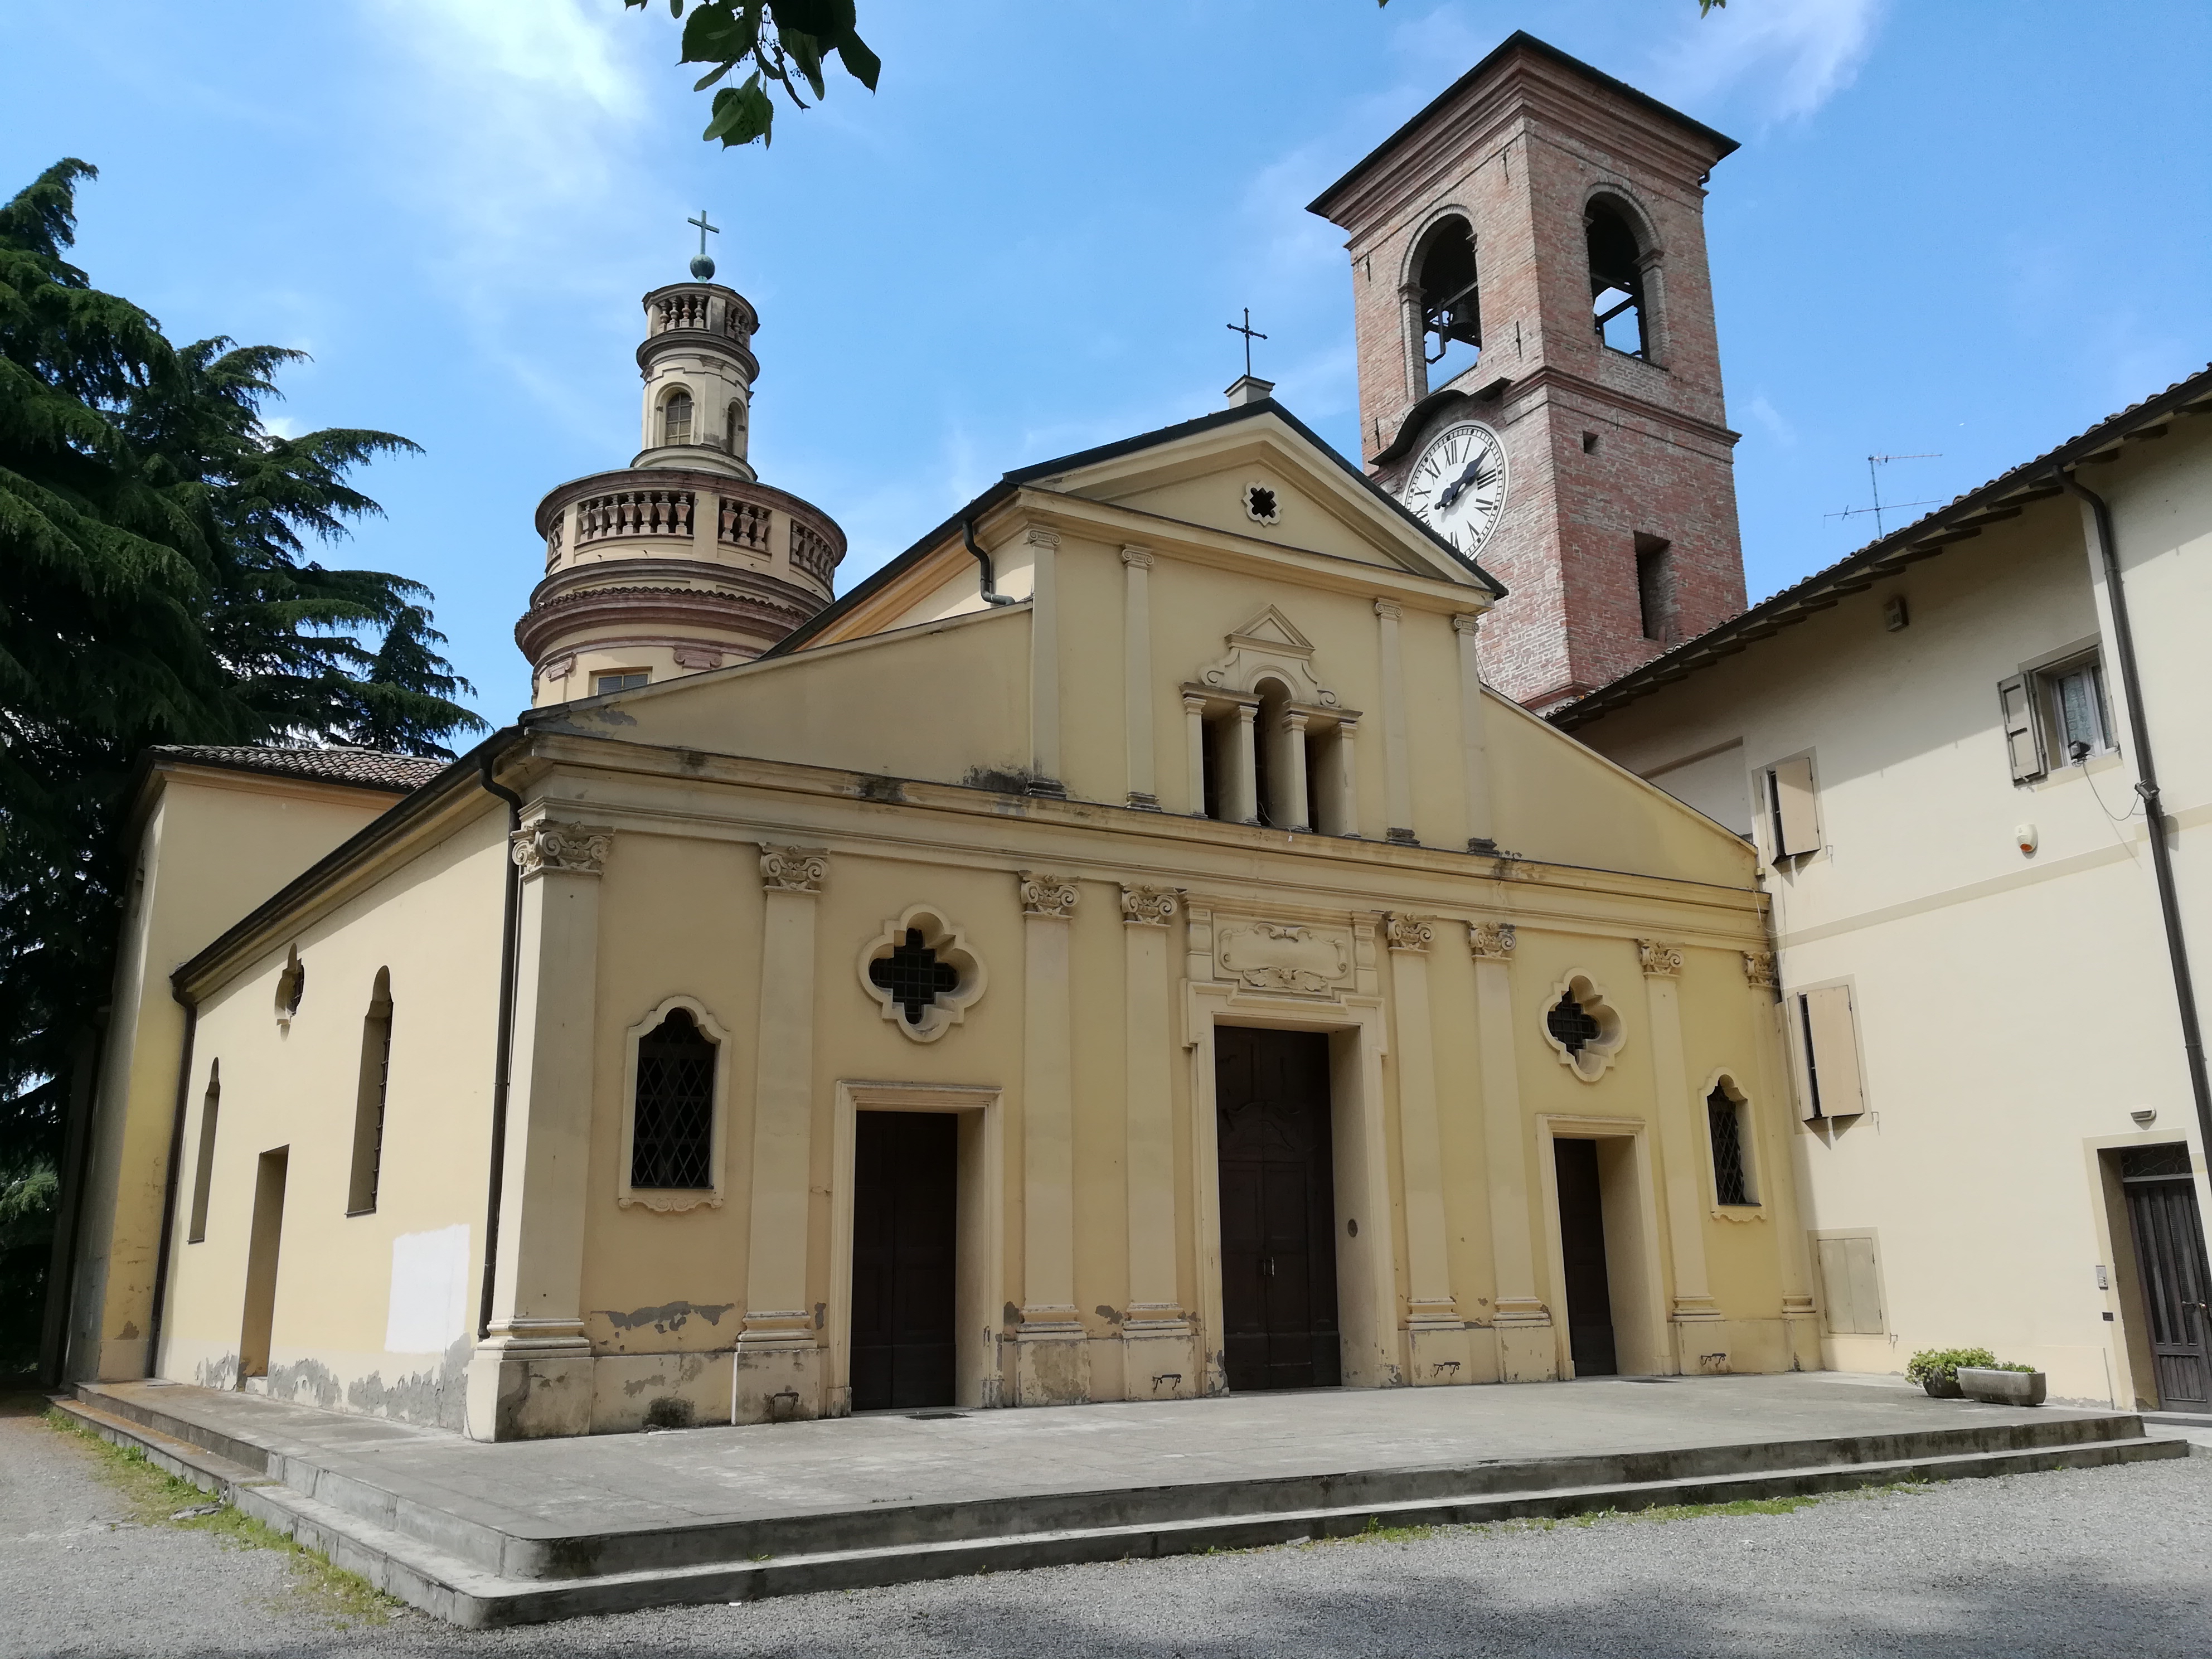 Cavriago è un comune italiano della provincia di Reggio nell'Emilia